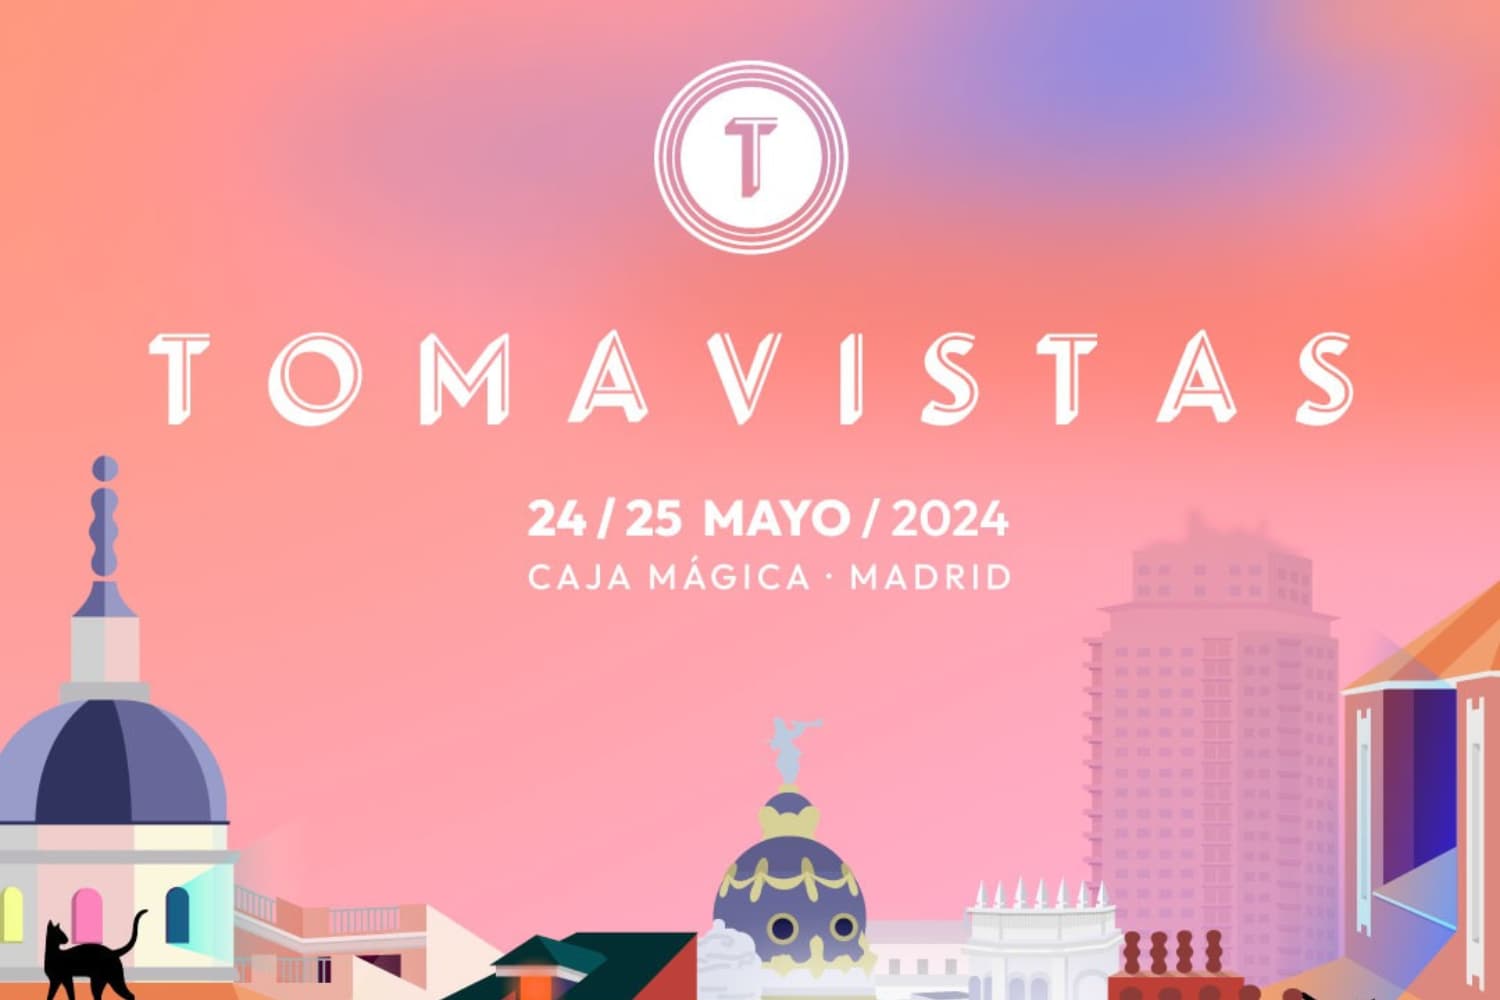 Tomavistas Festival